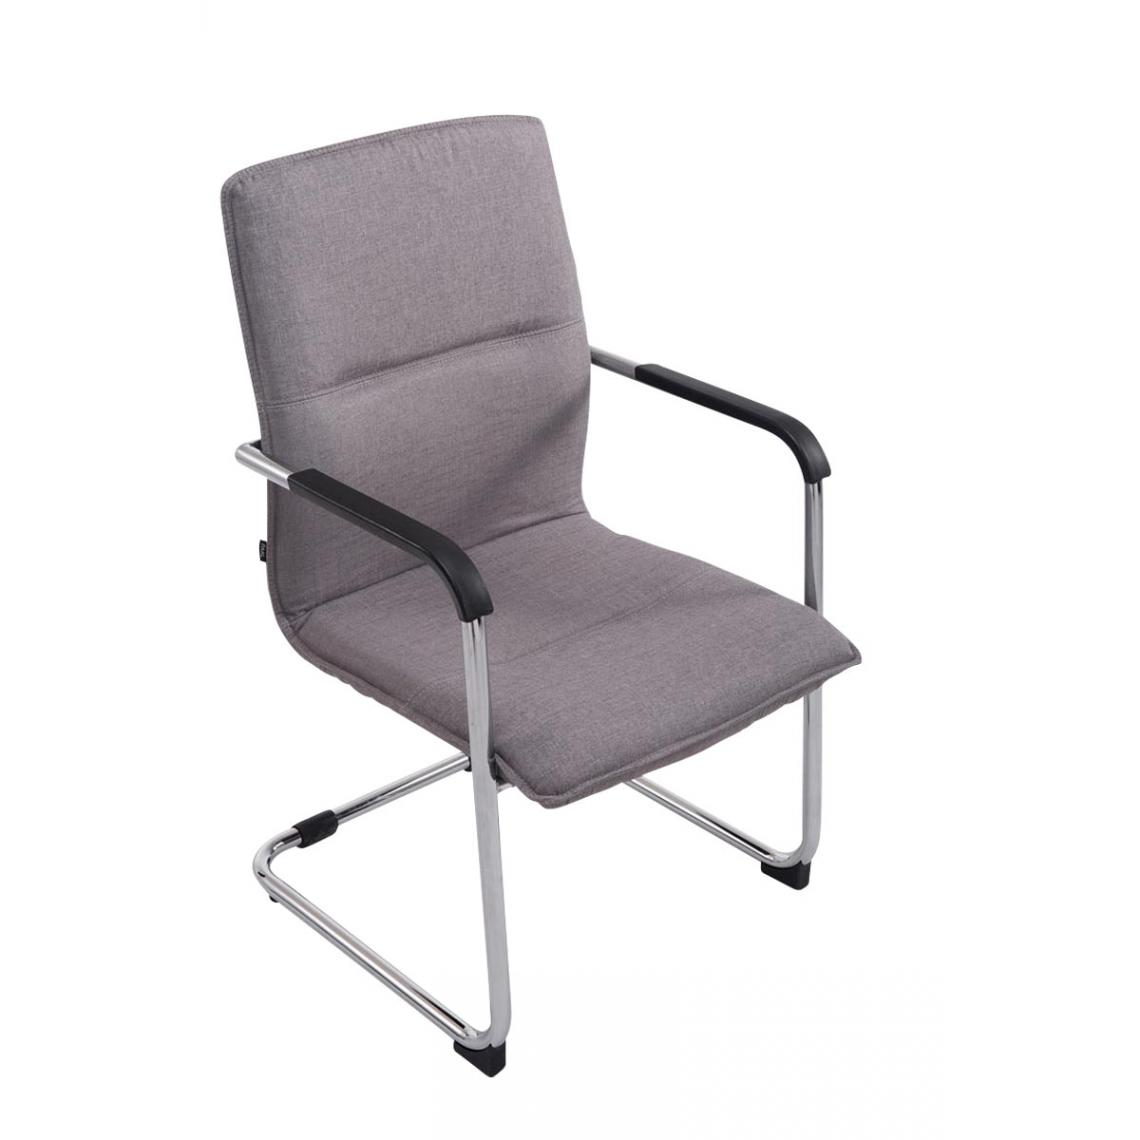 Icaverne - sublime Chaise visiteur en tissu Zagreb couleur gris - Chaises